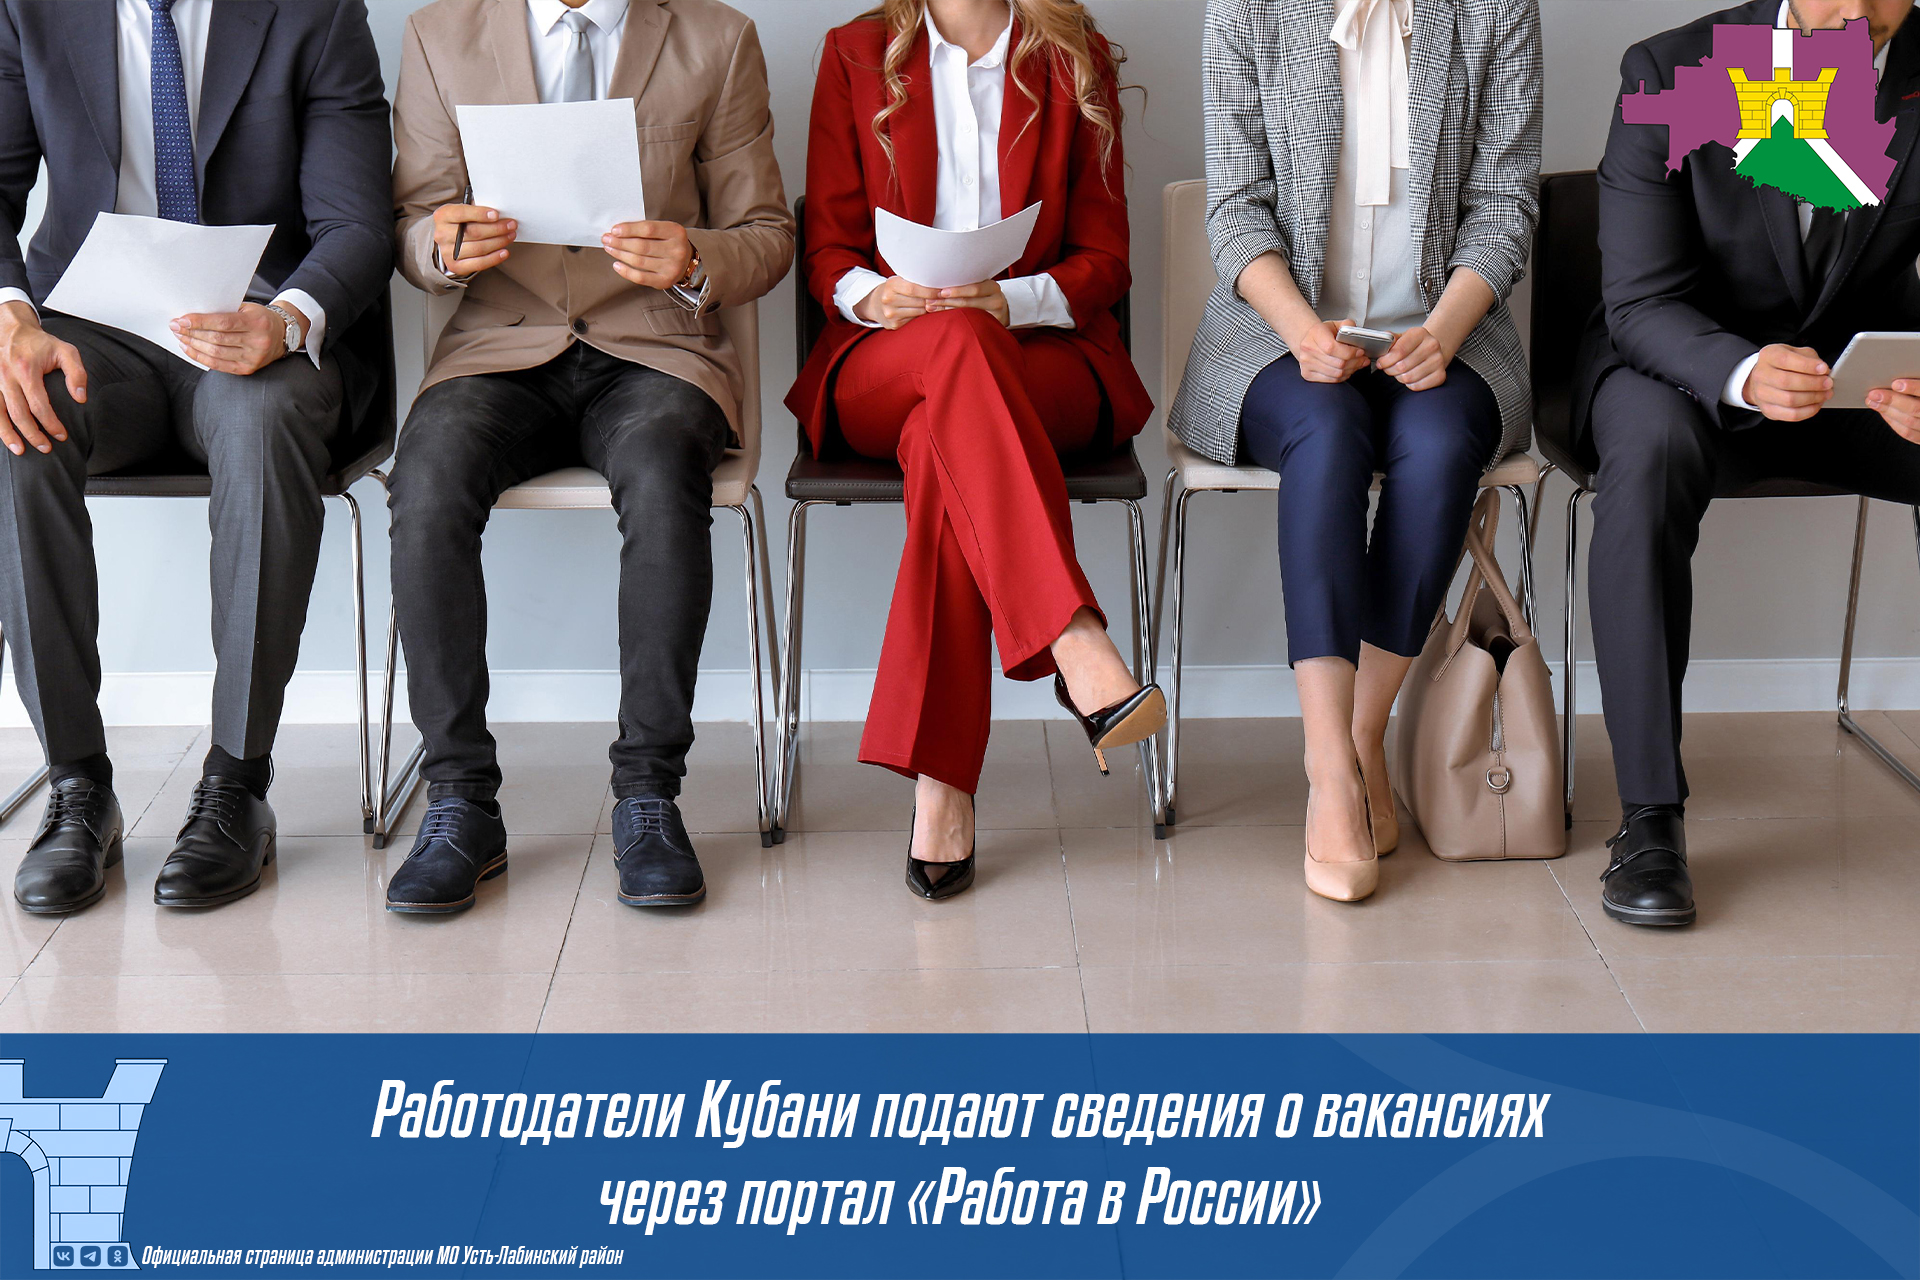 Работодатели Кубани подают сведения о вакансиях через портал «Работа в России»